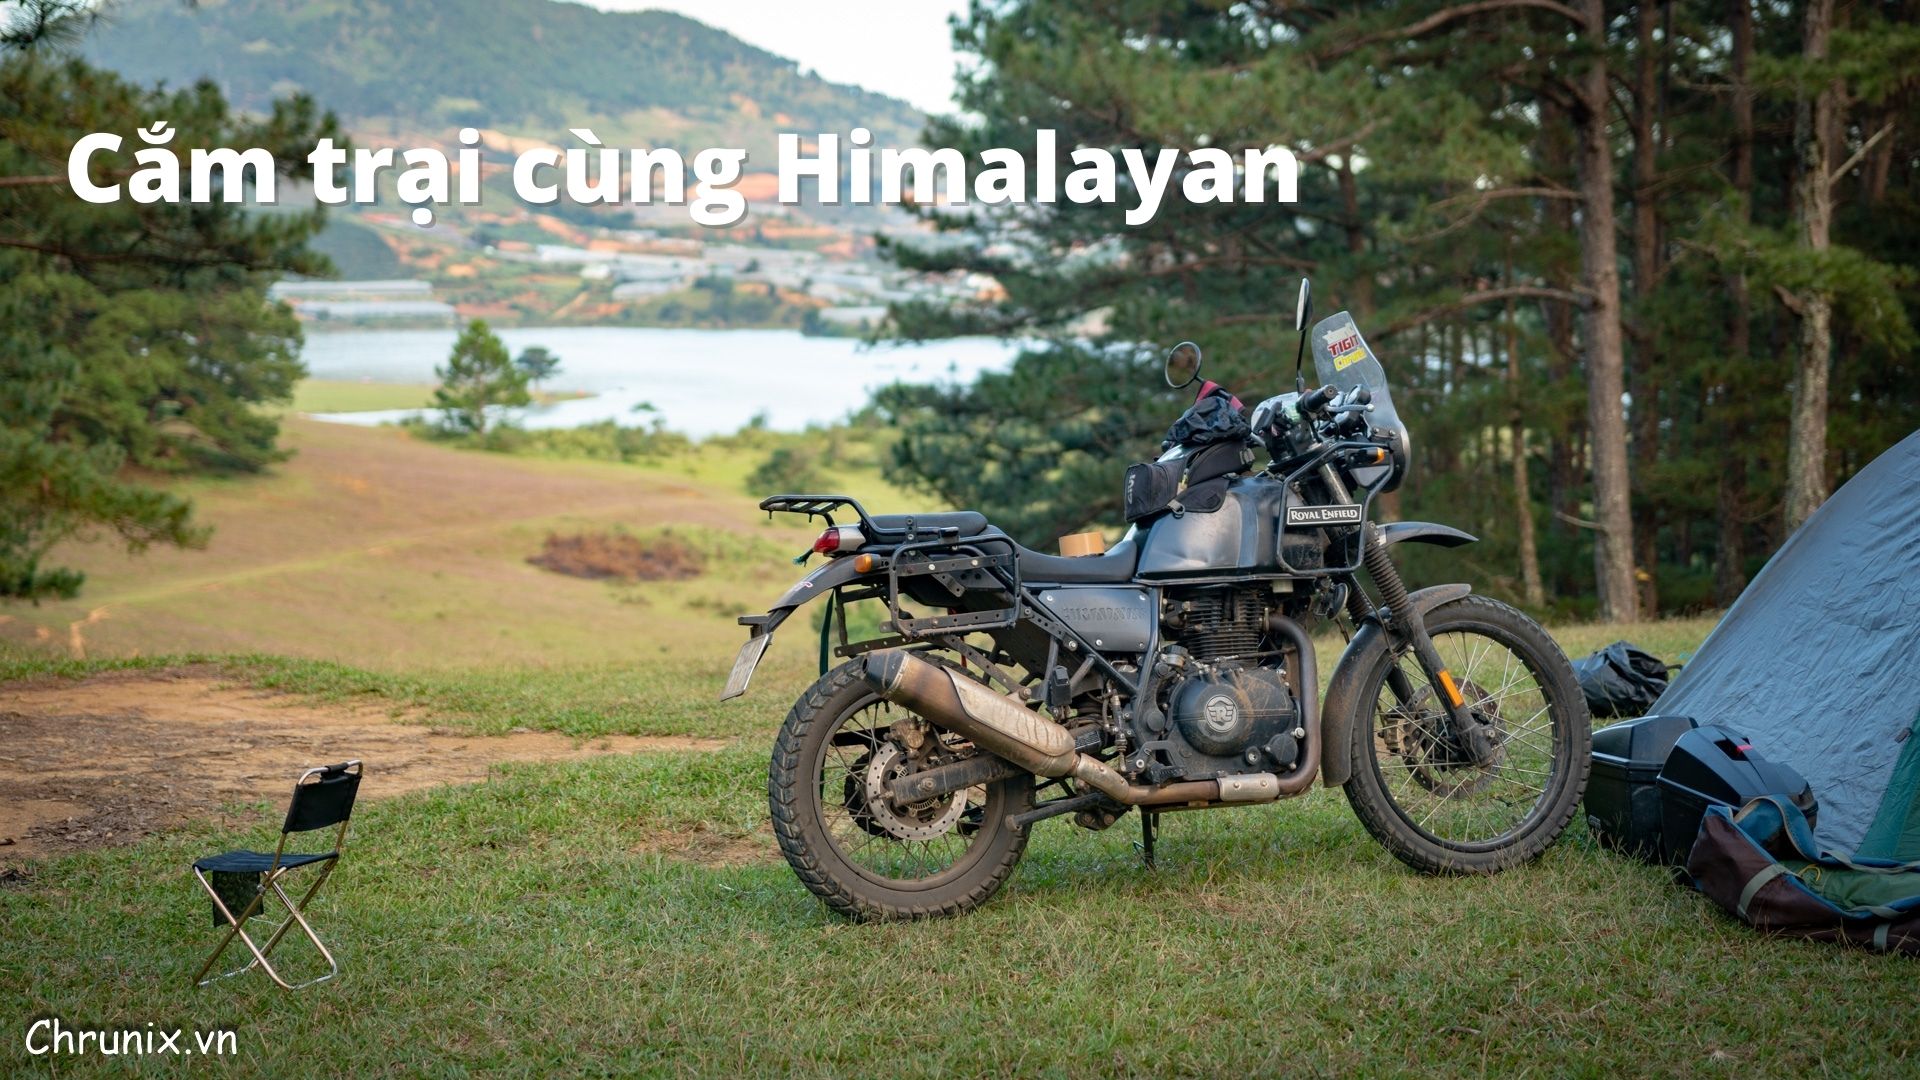 Motorcycle Camping - Tận Hưởng Thiên Nhiên Hoang Dã Trên Con Xe Máy